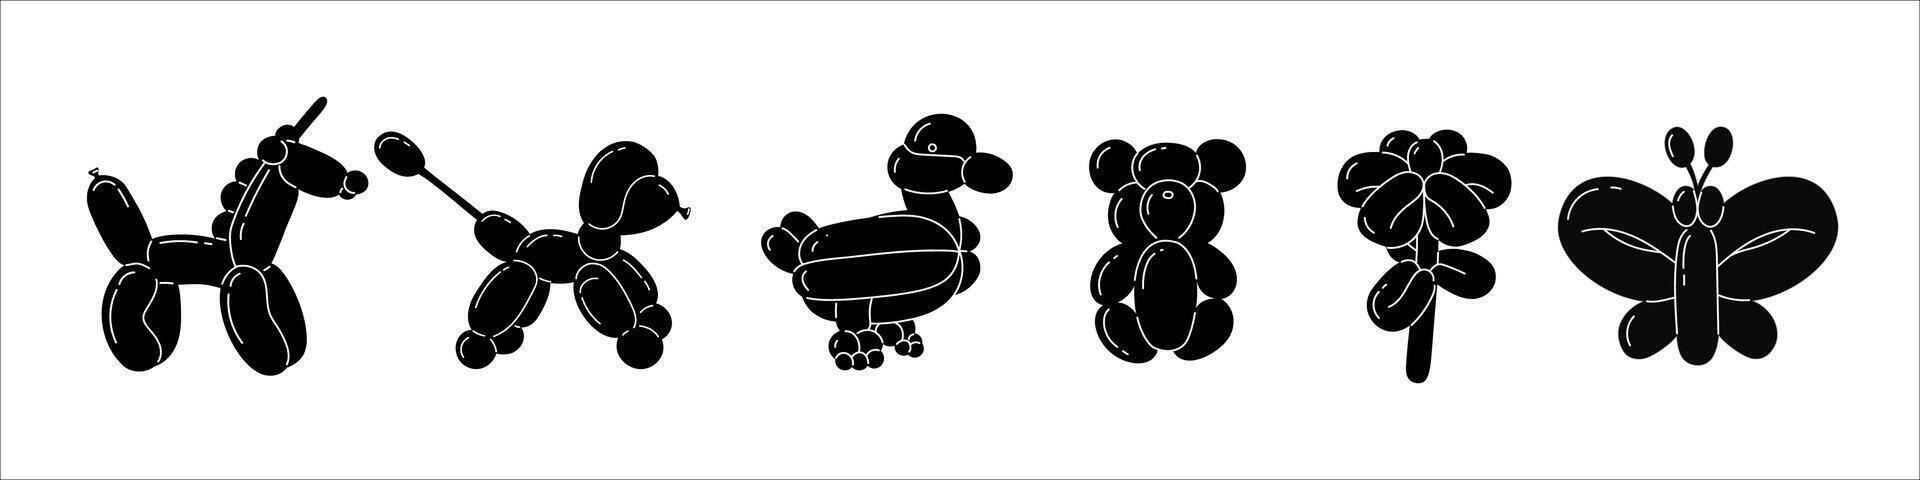 verzameling van zwart dieren gemaakt van ballonnen en stickers met bubbels in modieus retro 2000 stijl. vector